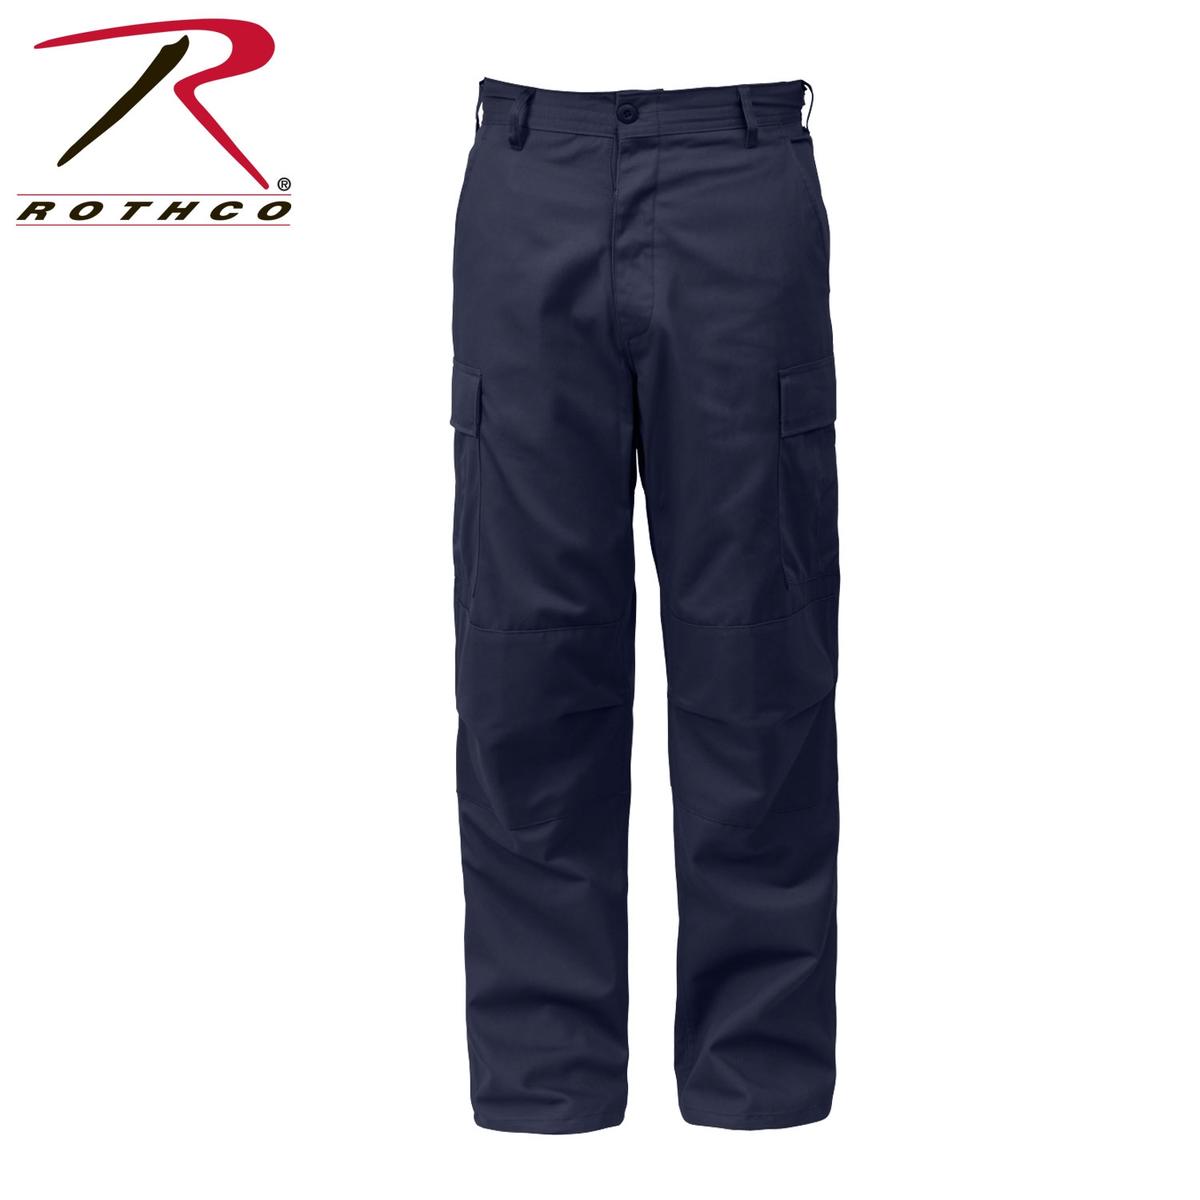 Rothco Cargo Pants- Navy